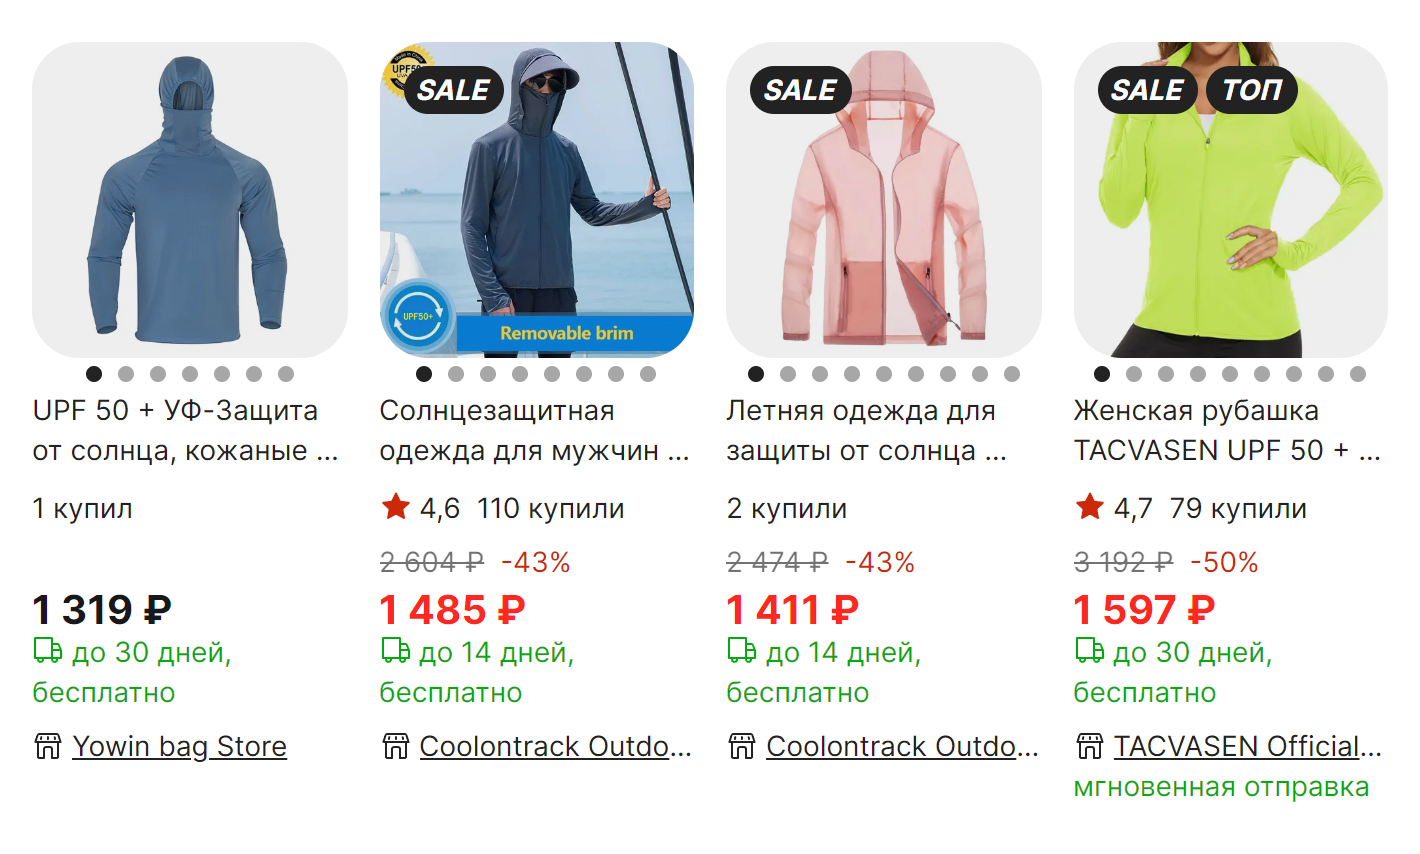 Одежду с защитой от ультрафиолета можно купить на любом маркетплейсе. Источник: aliexpress.ru